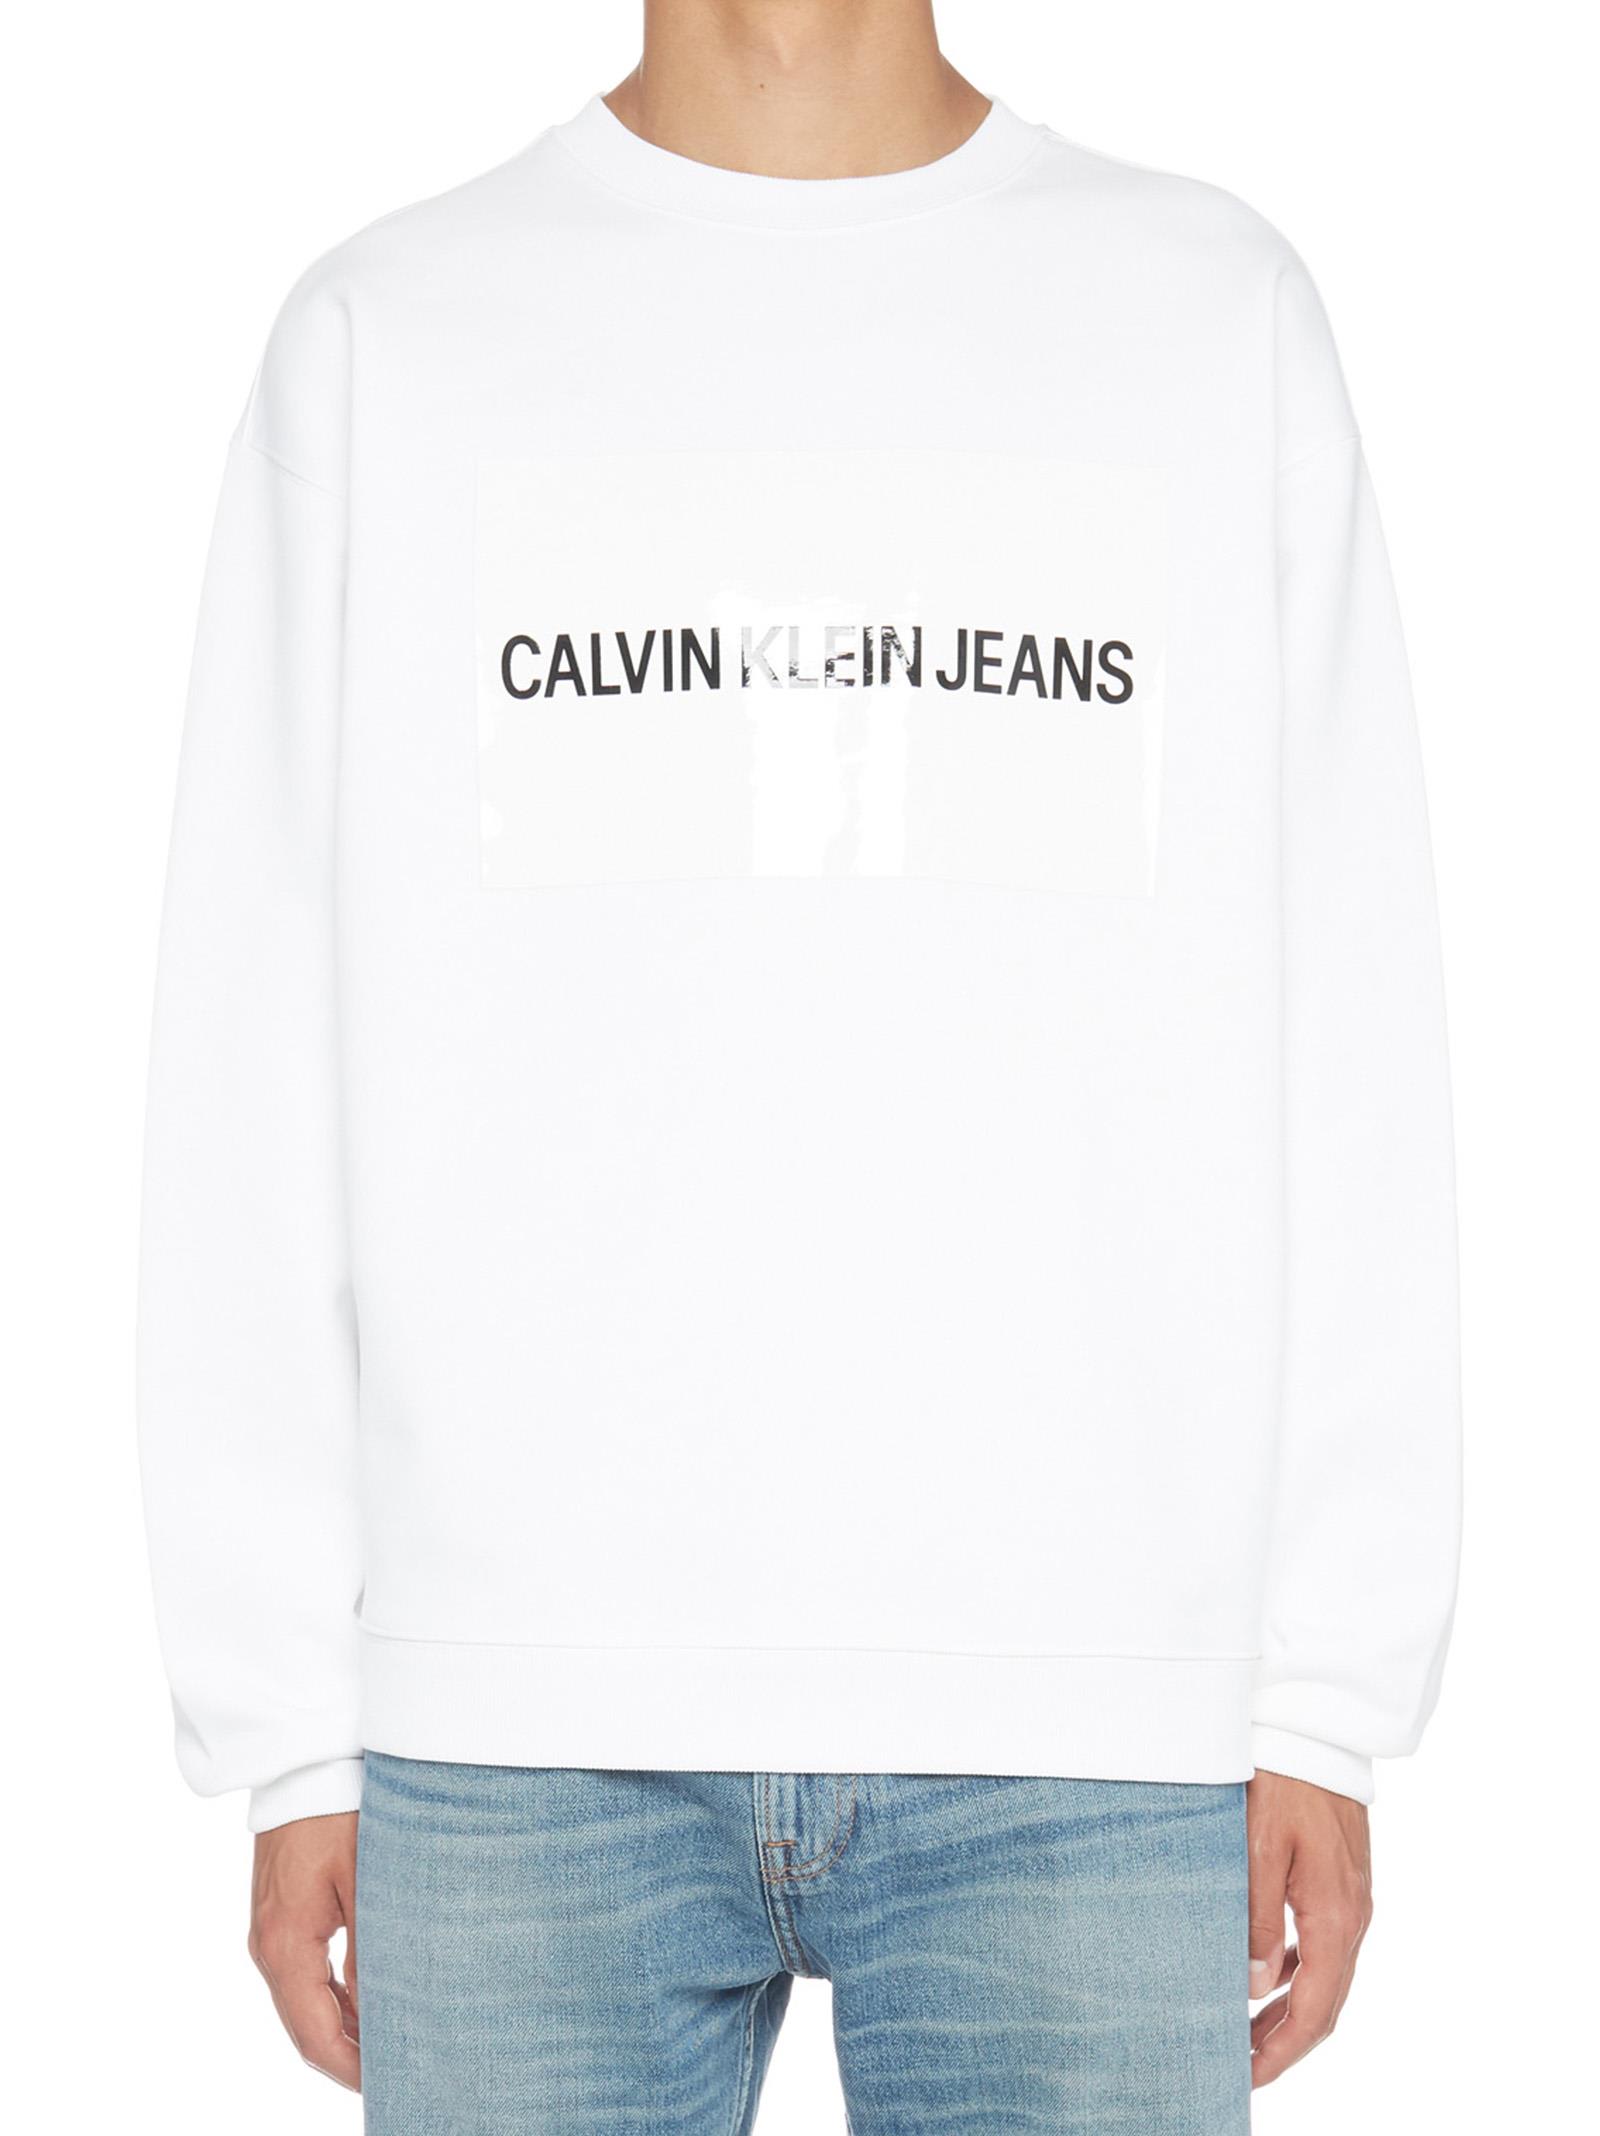 calvin klein jeans institutional logo sweatshirt